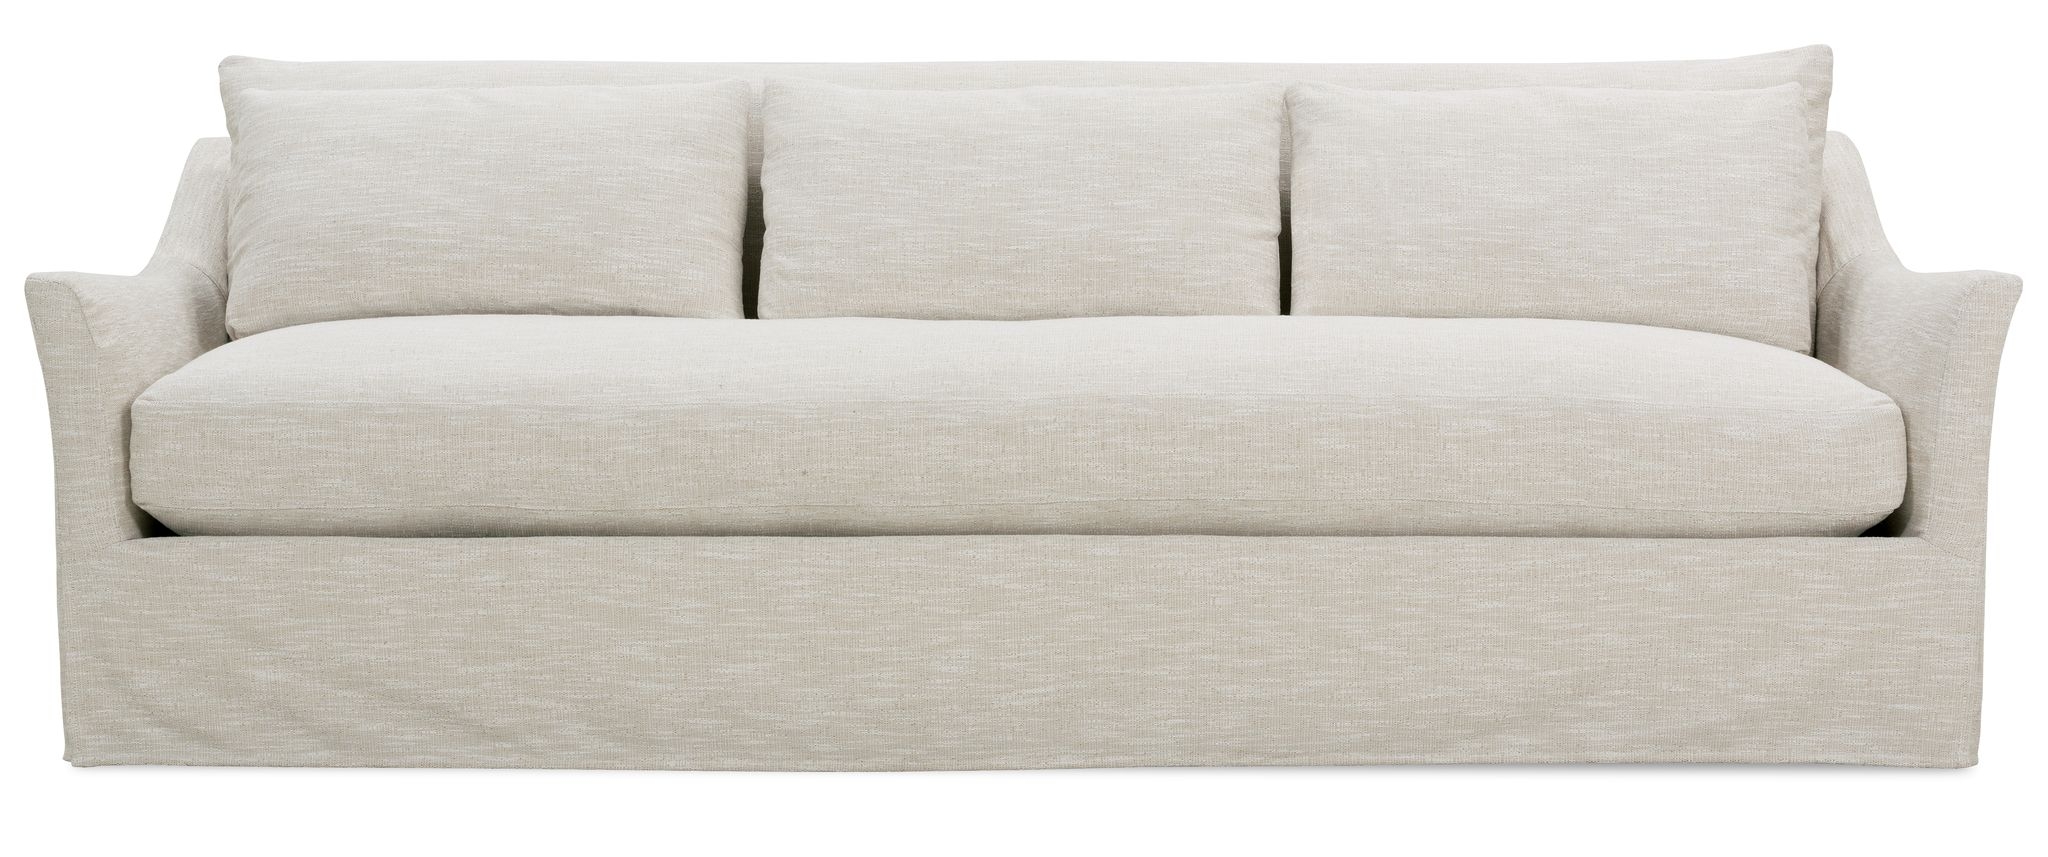 Moreau Slipcover Sofa, Bench Cushion, White, 95" - Image 0